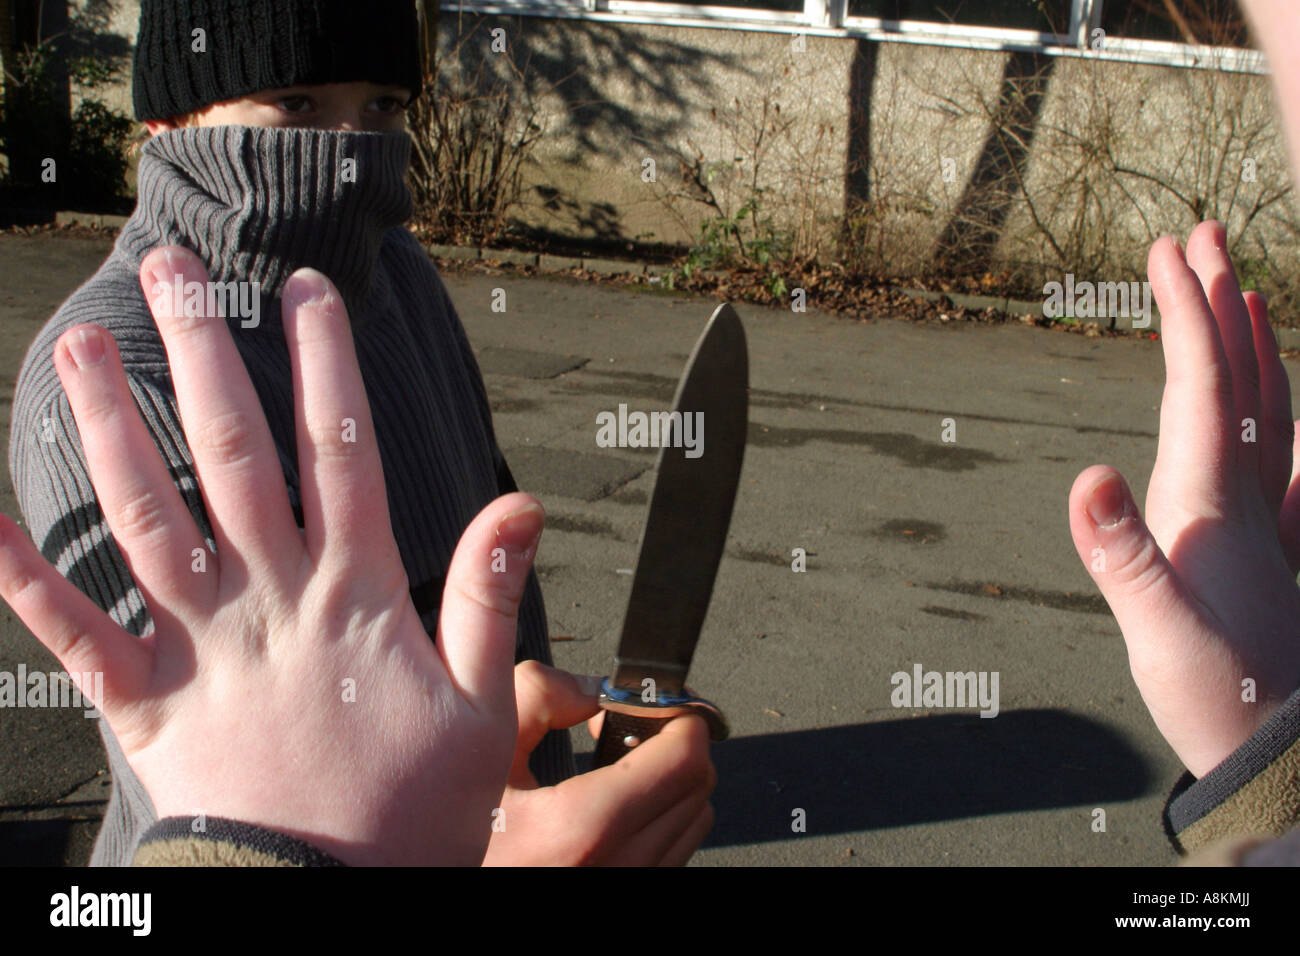 La delincuencia juvenil, el robo, el ataque, la cuchilla, AVERT Foto de stock